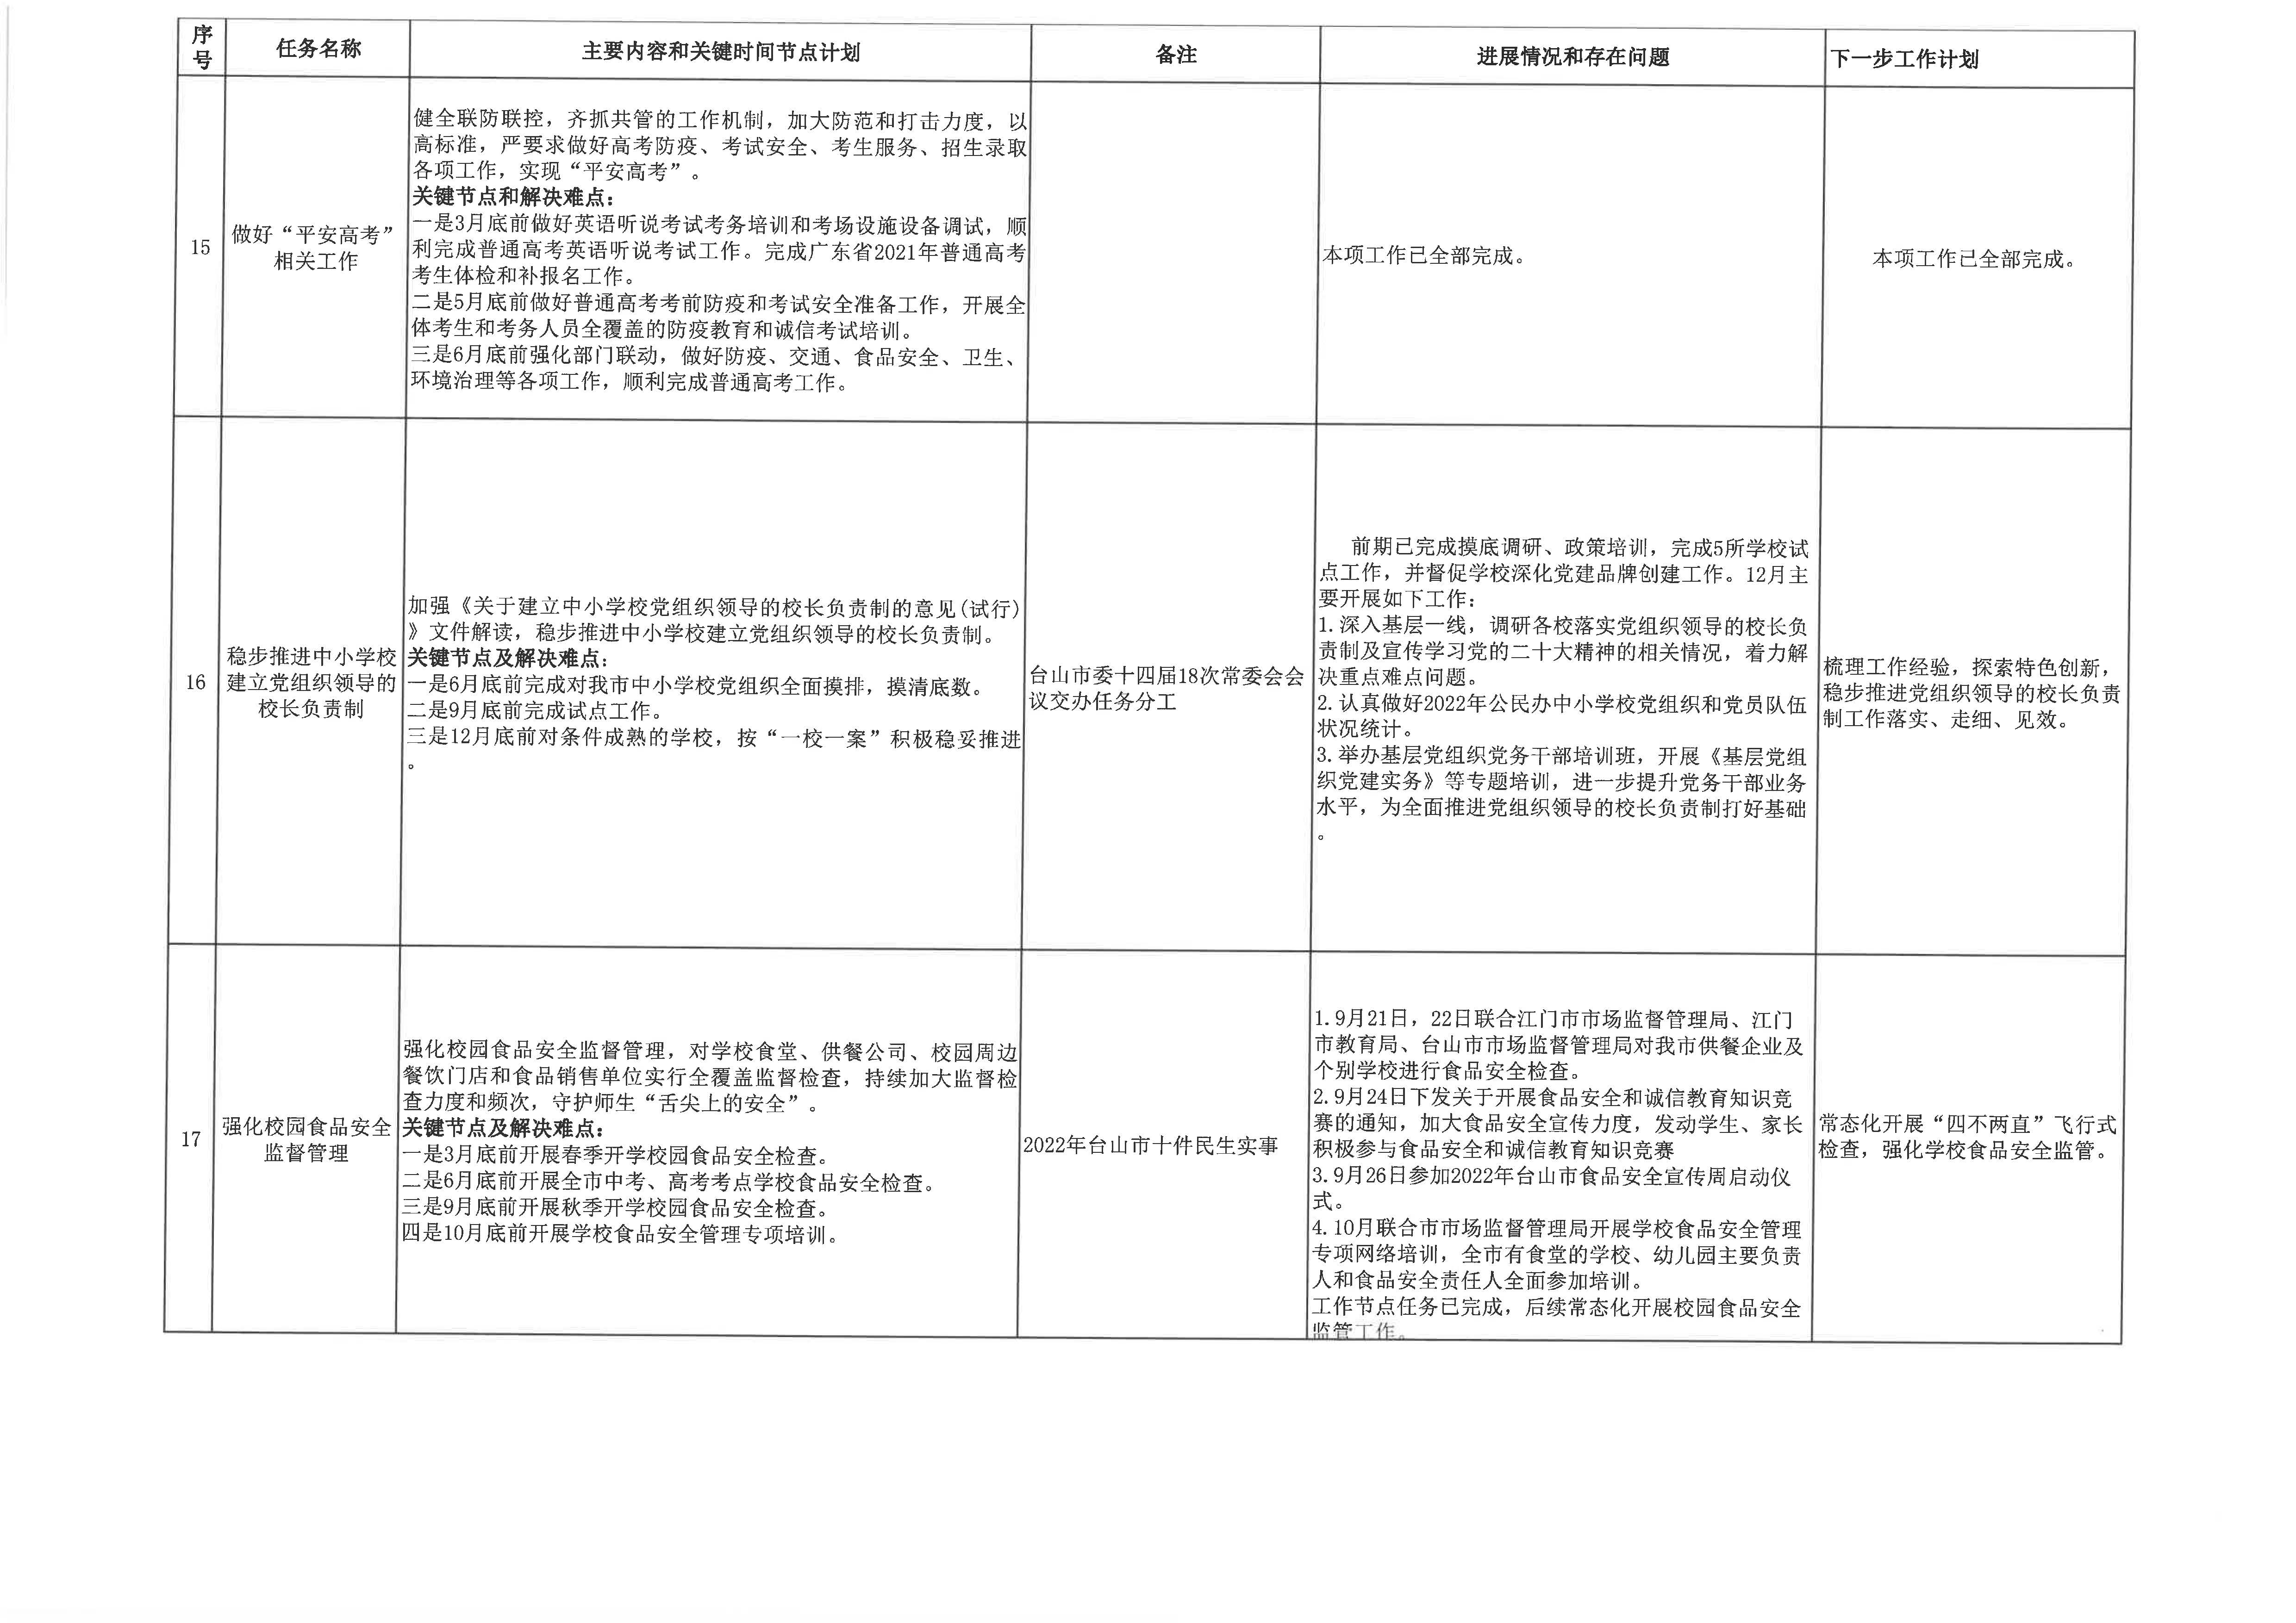 20230113台山市教育系统2022年重点工作任务进展情况表（1-12月）5.jpg